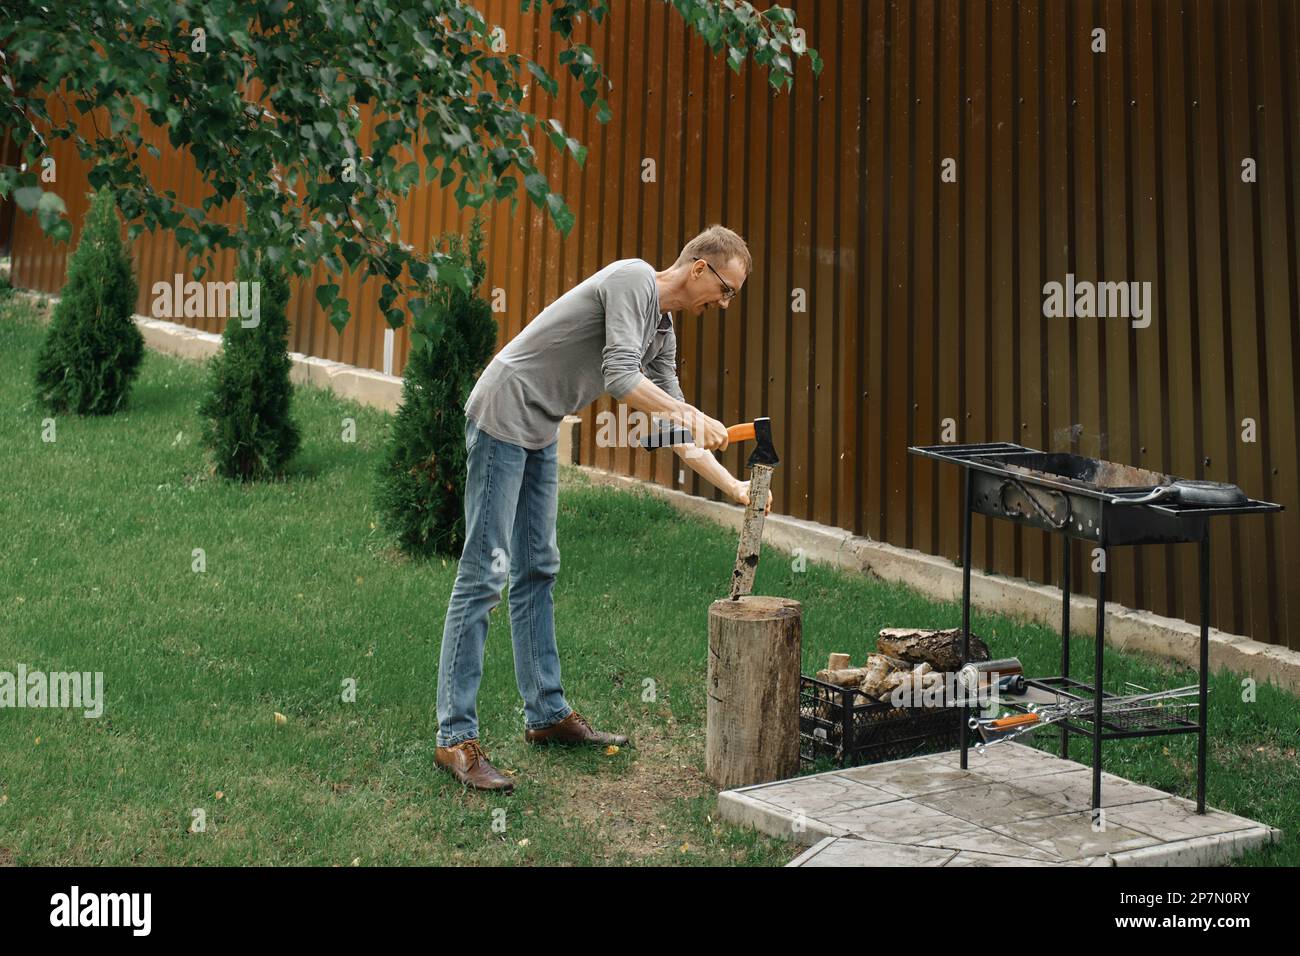 Homme hacher du bois près d'un barbecue Banque D'Images